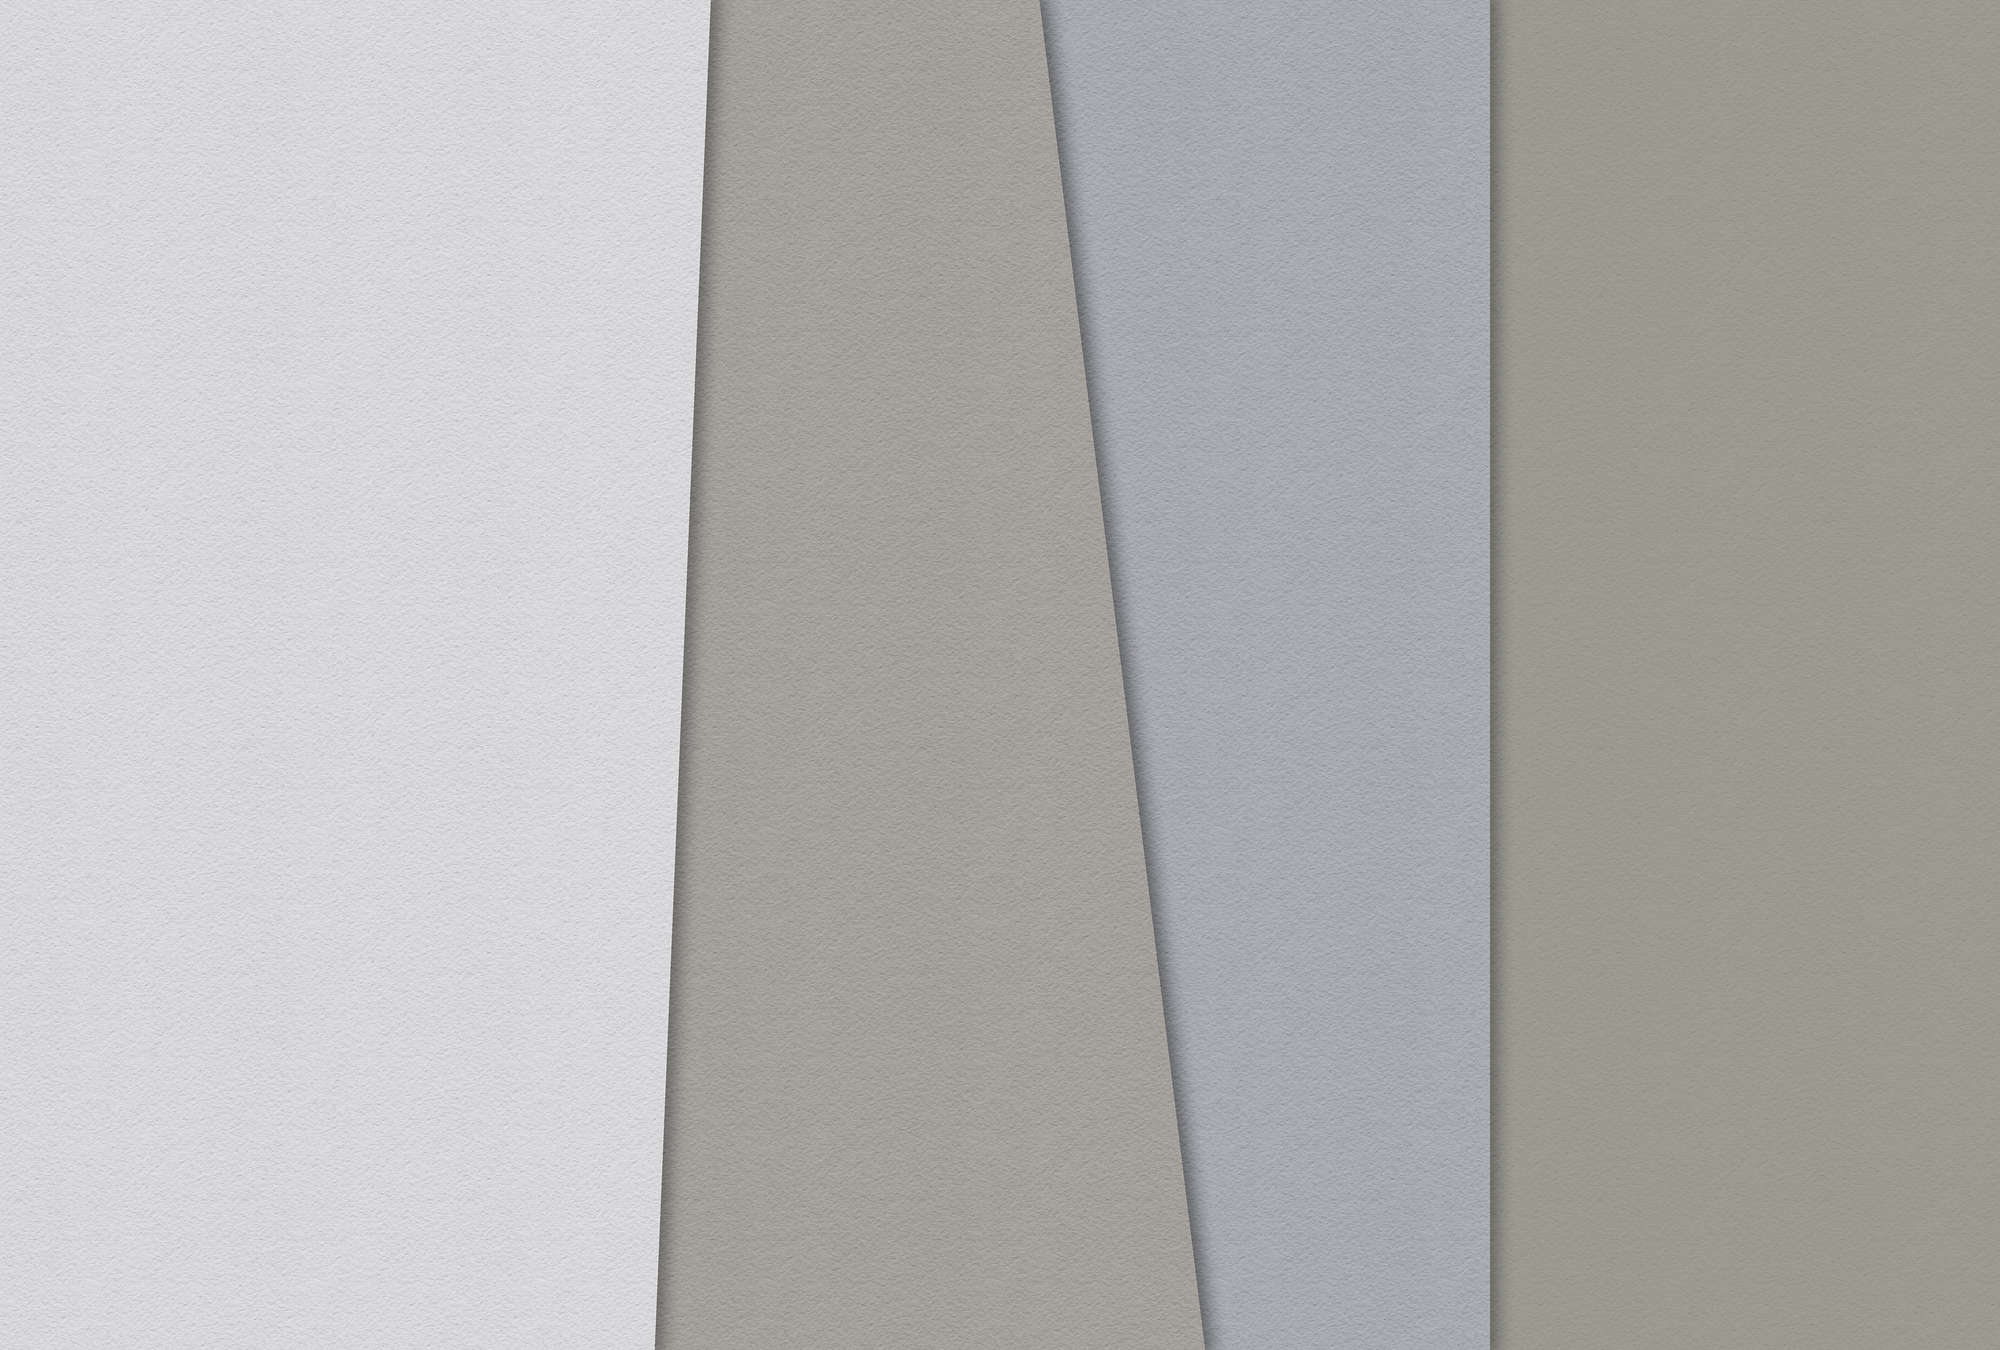             Carta stratificata 4 - Fotomurali minimalista colorato in carta fatta a mano - Blu, Crema | Pile liscio opaco
        